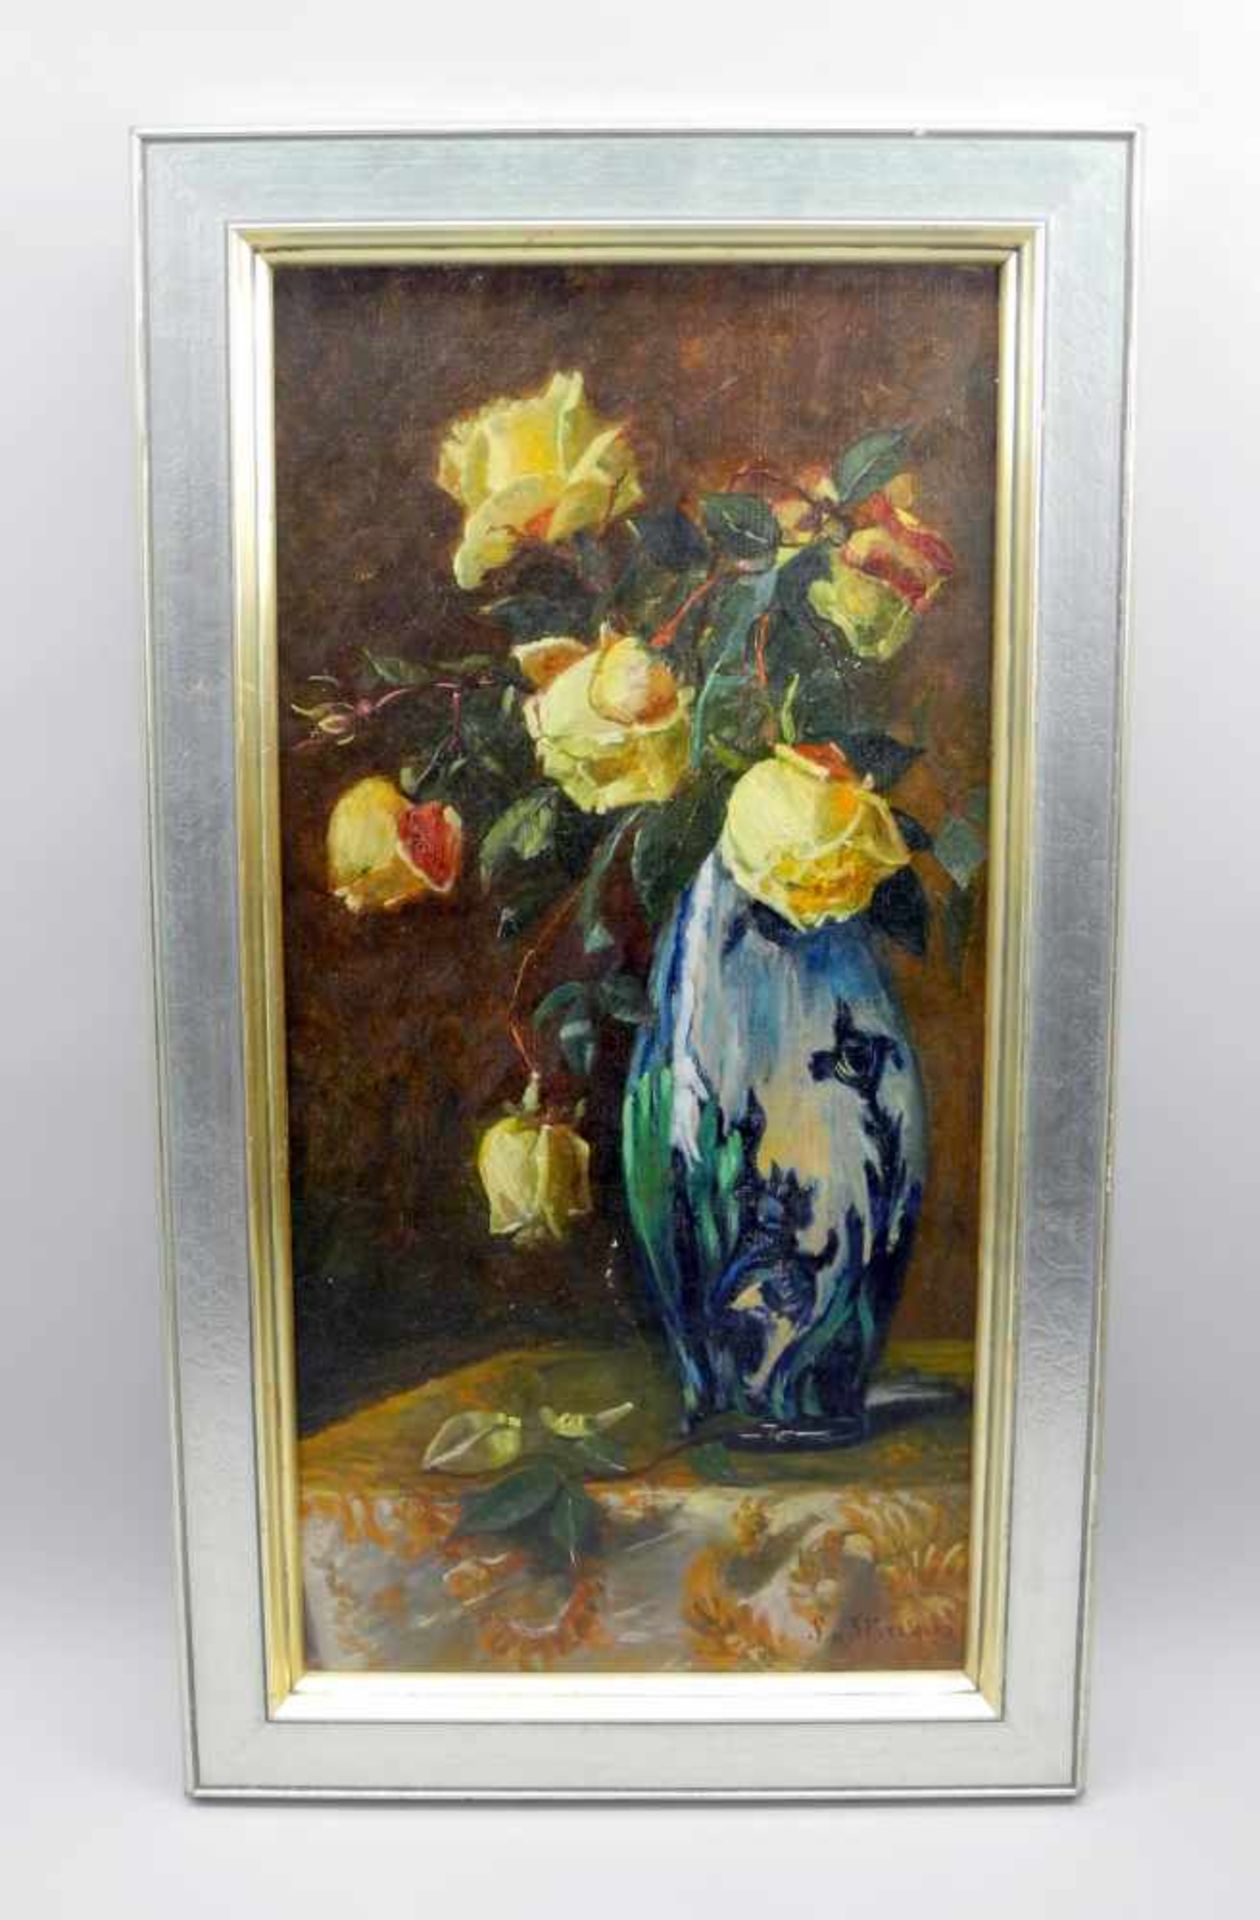 Stephanie von Strechine, 1858 Odessa - 1940 Bad TölzÖl/Leinwand. Gelbe Rosen in blauer Vase. - Image 2 of 3